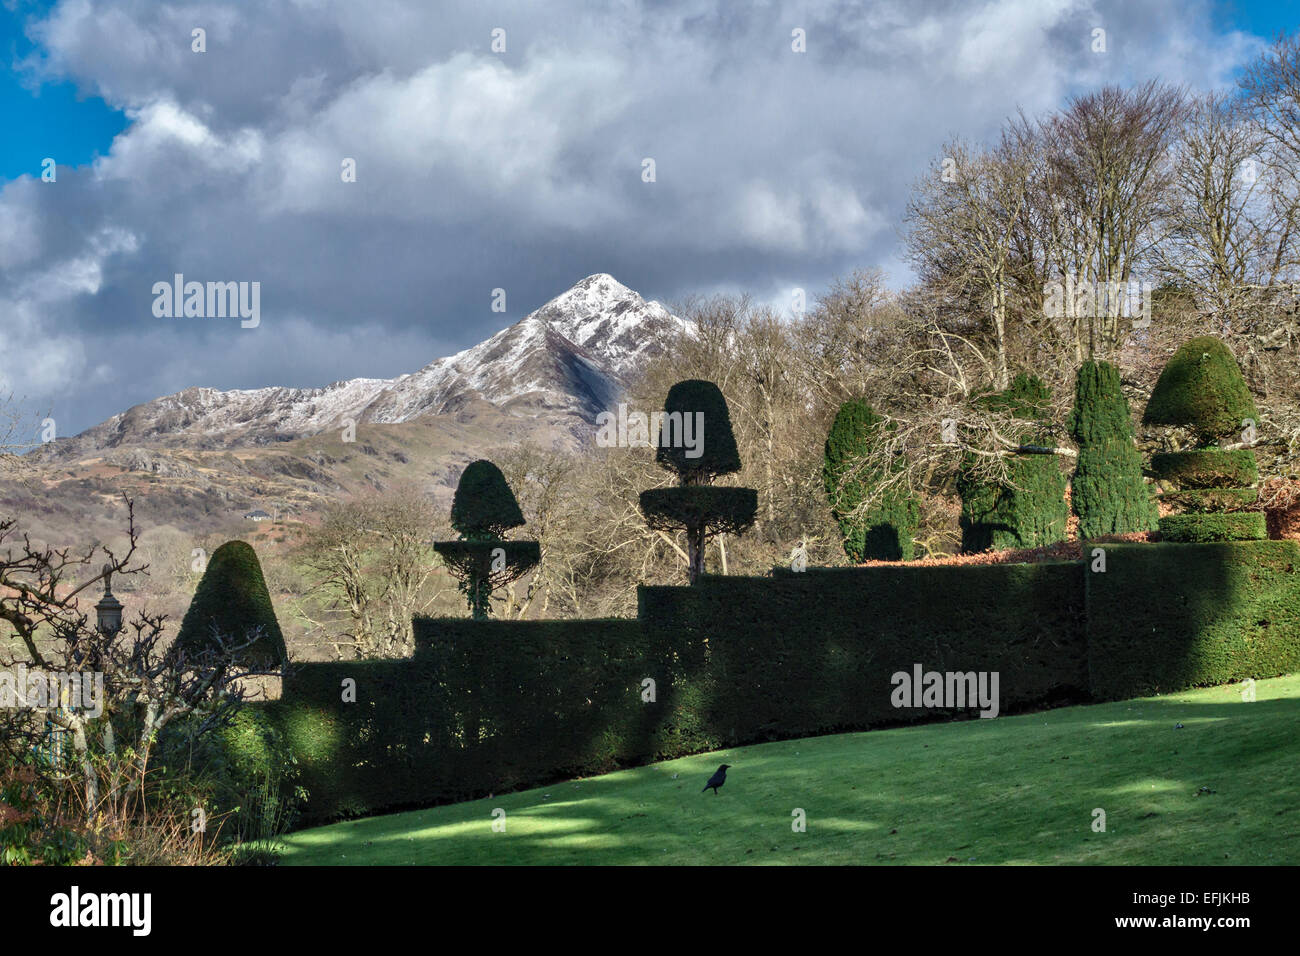 La vetta innevata del Cnicht a Snowdonia, Galles, vista dai giardini topiari formali di Plas Brondanw, progettato da Clough Williams-Ellis a partire dal 1902 Foto Stock